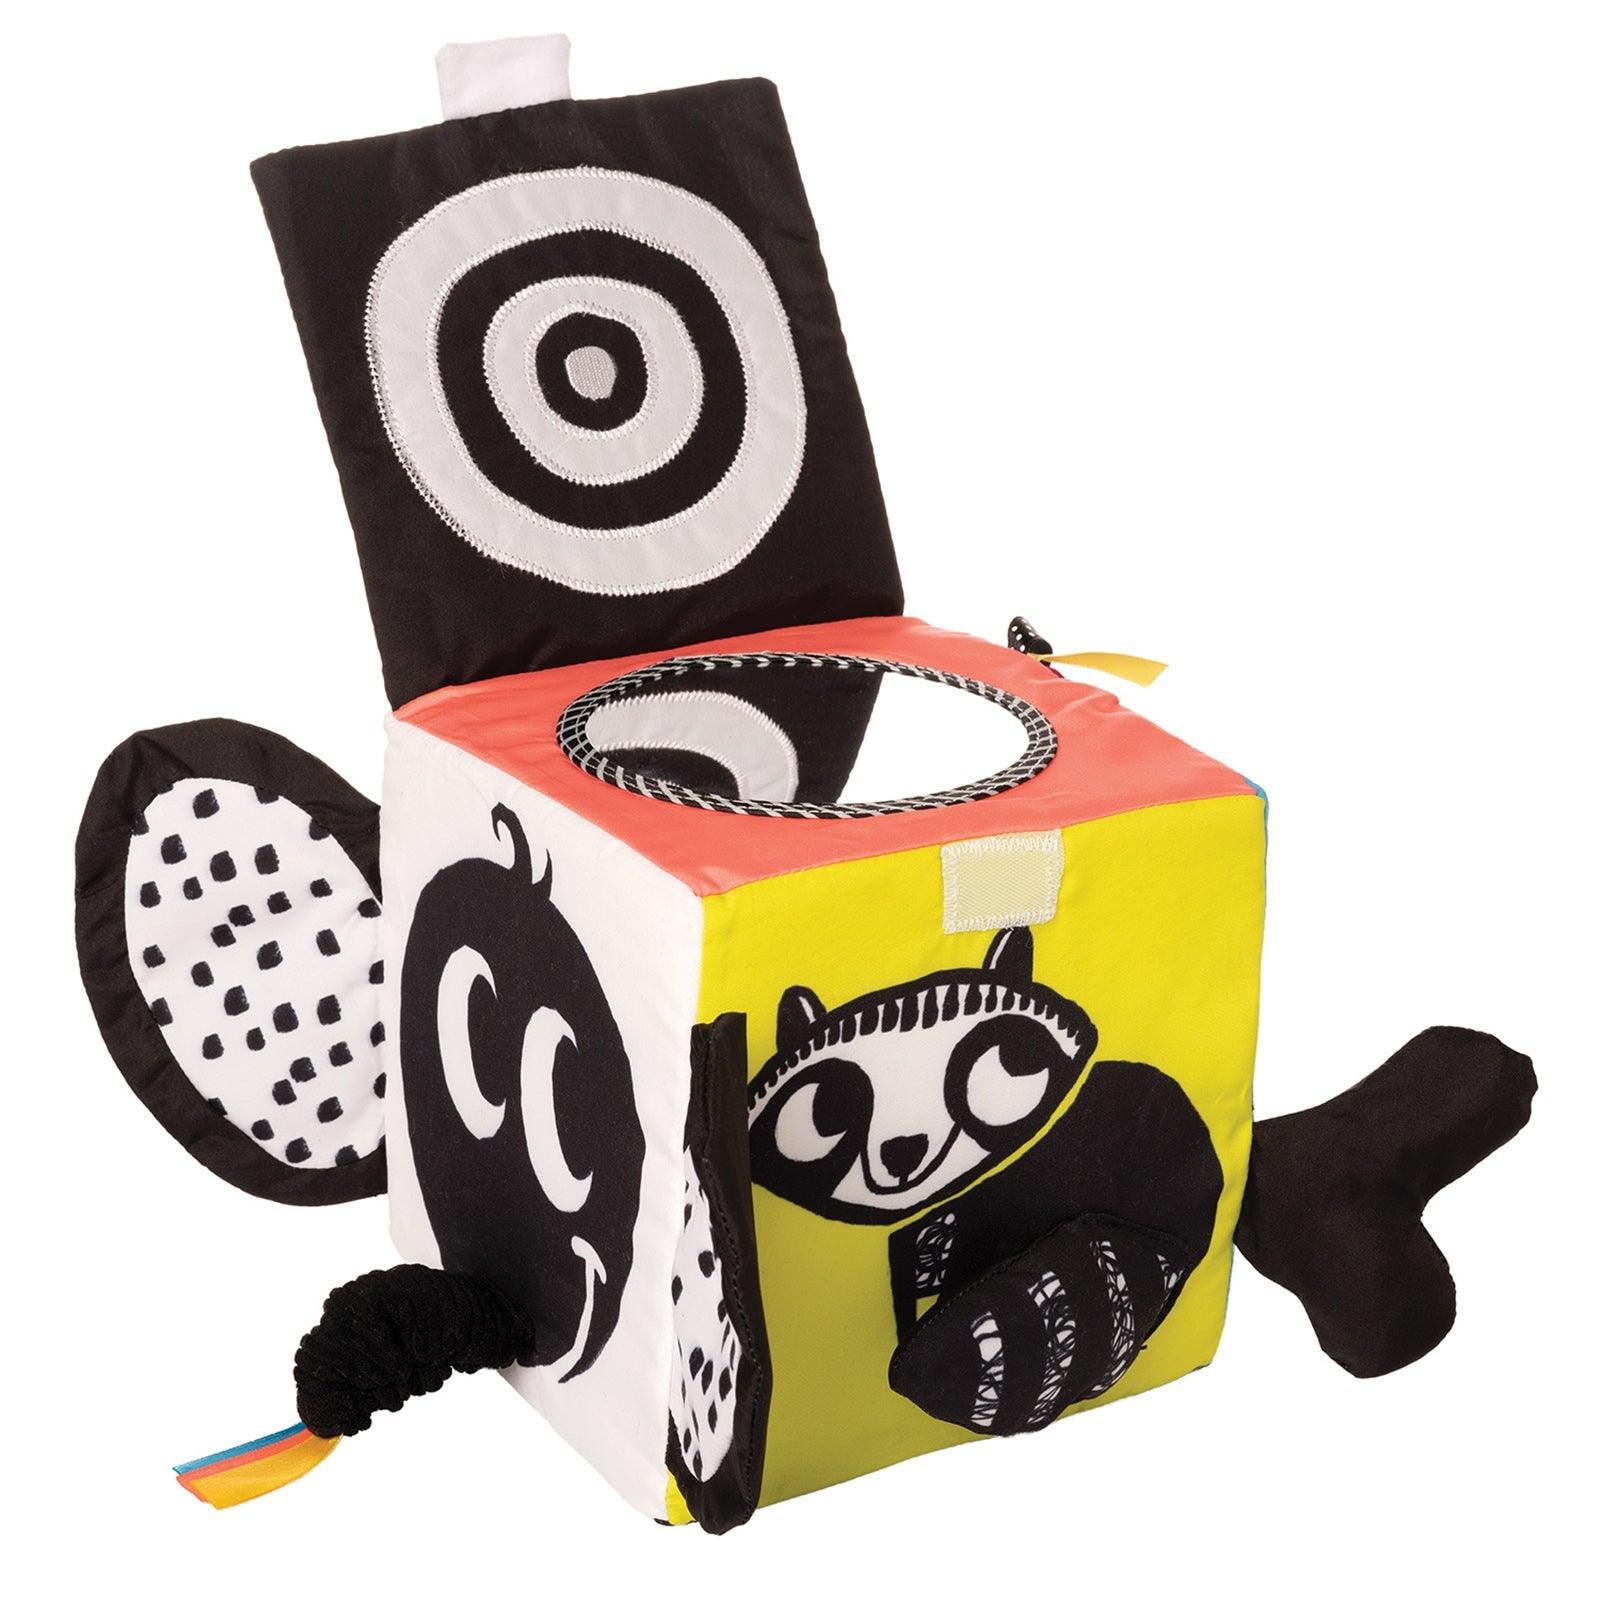 Manhattan Toy: kontrastowa kostka dla niemowląt Wimmer-Ferguson Learning Cube - Noski Noski